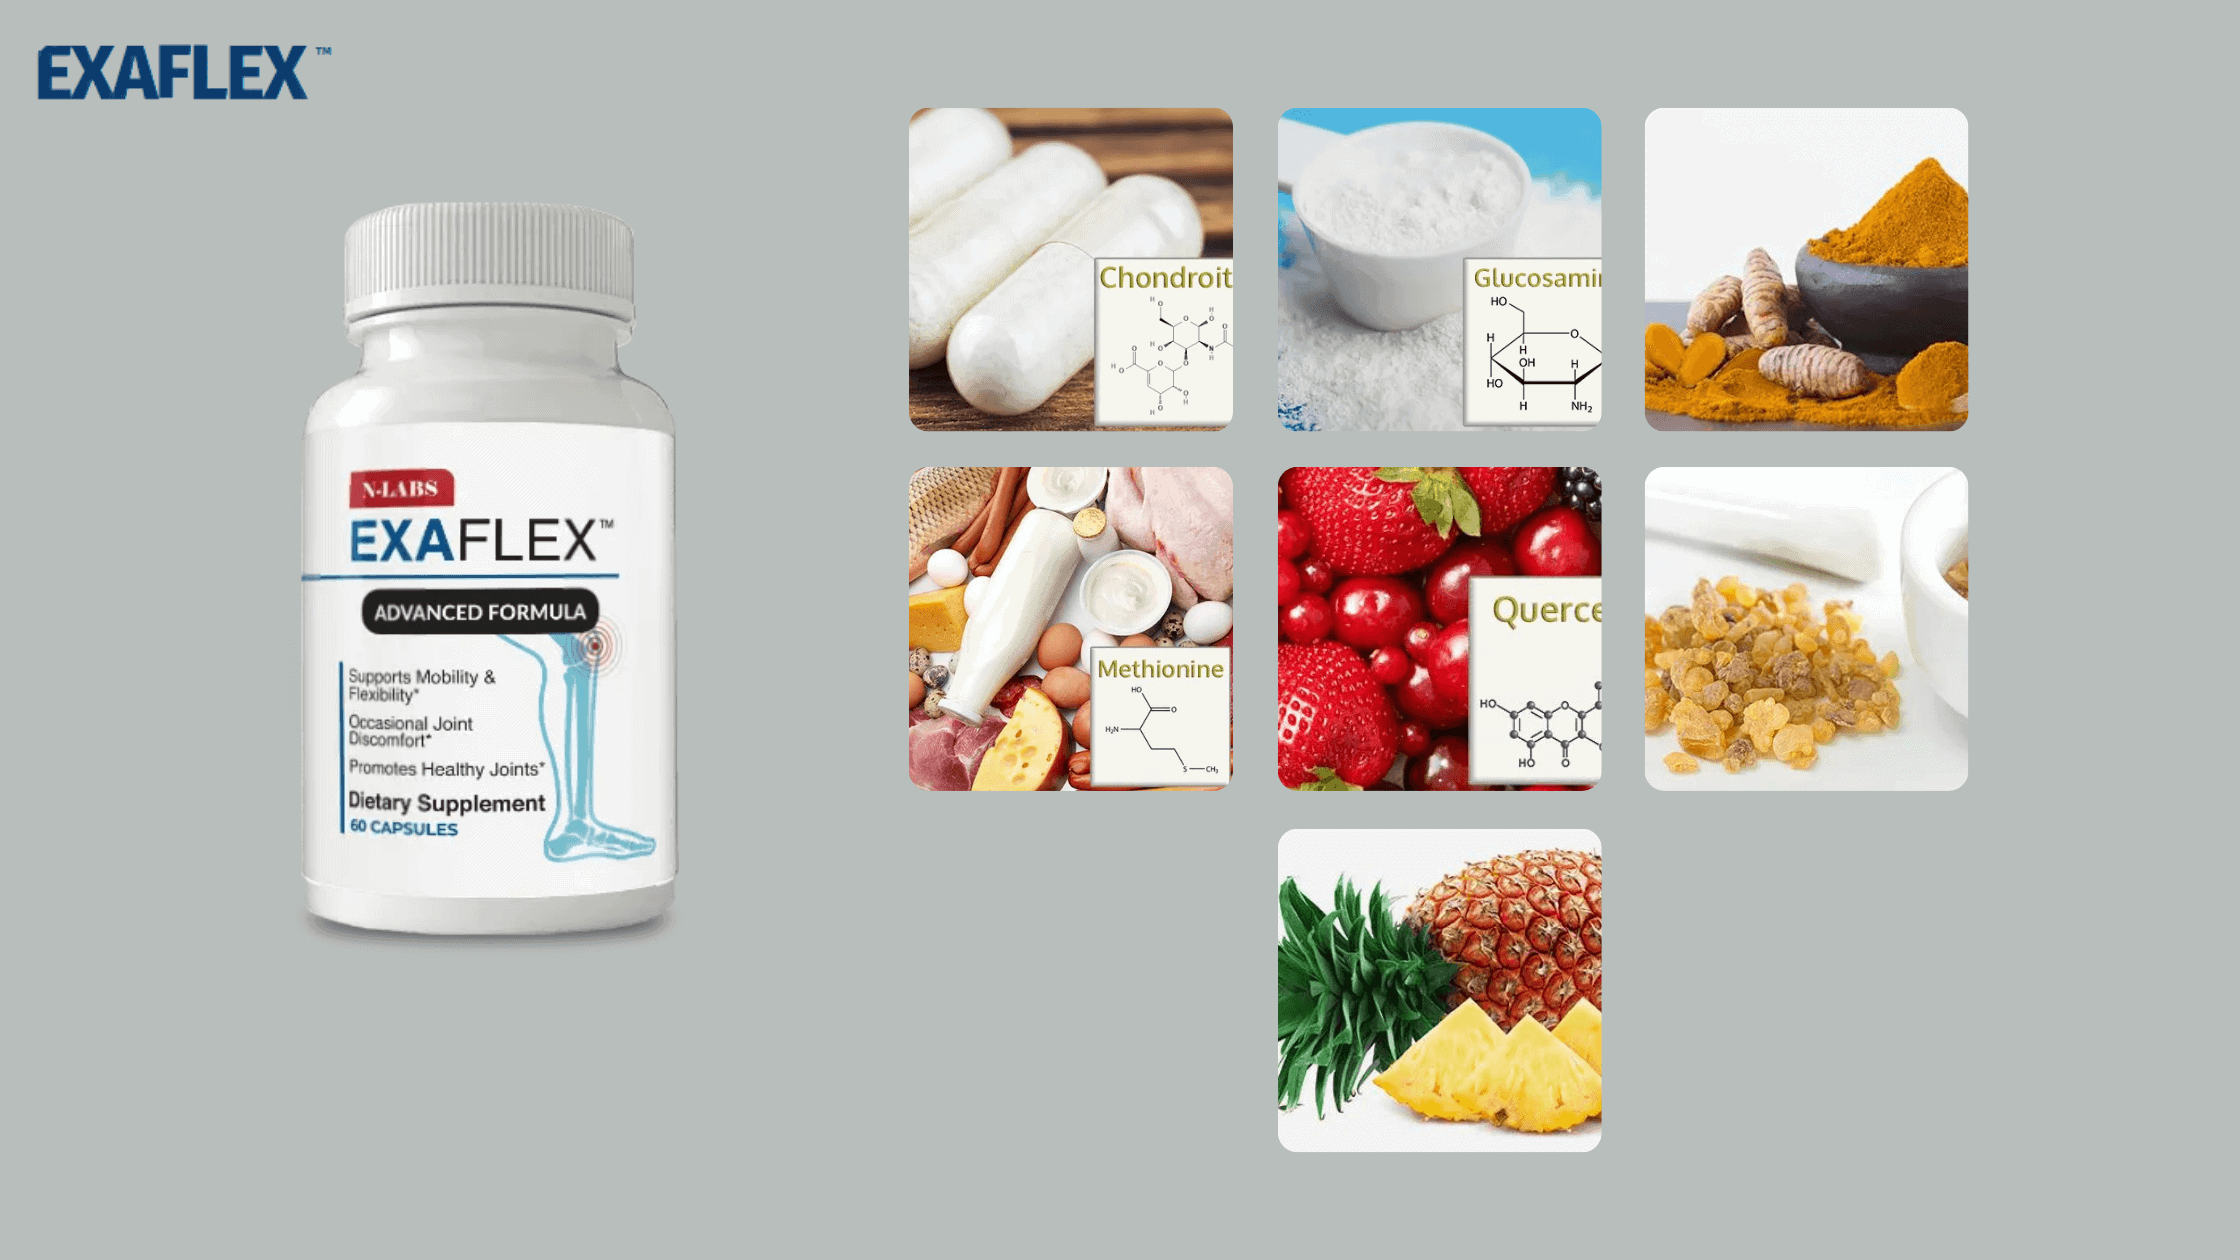 ExaFlex ingredients